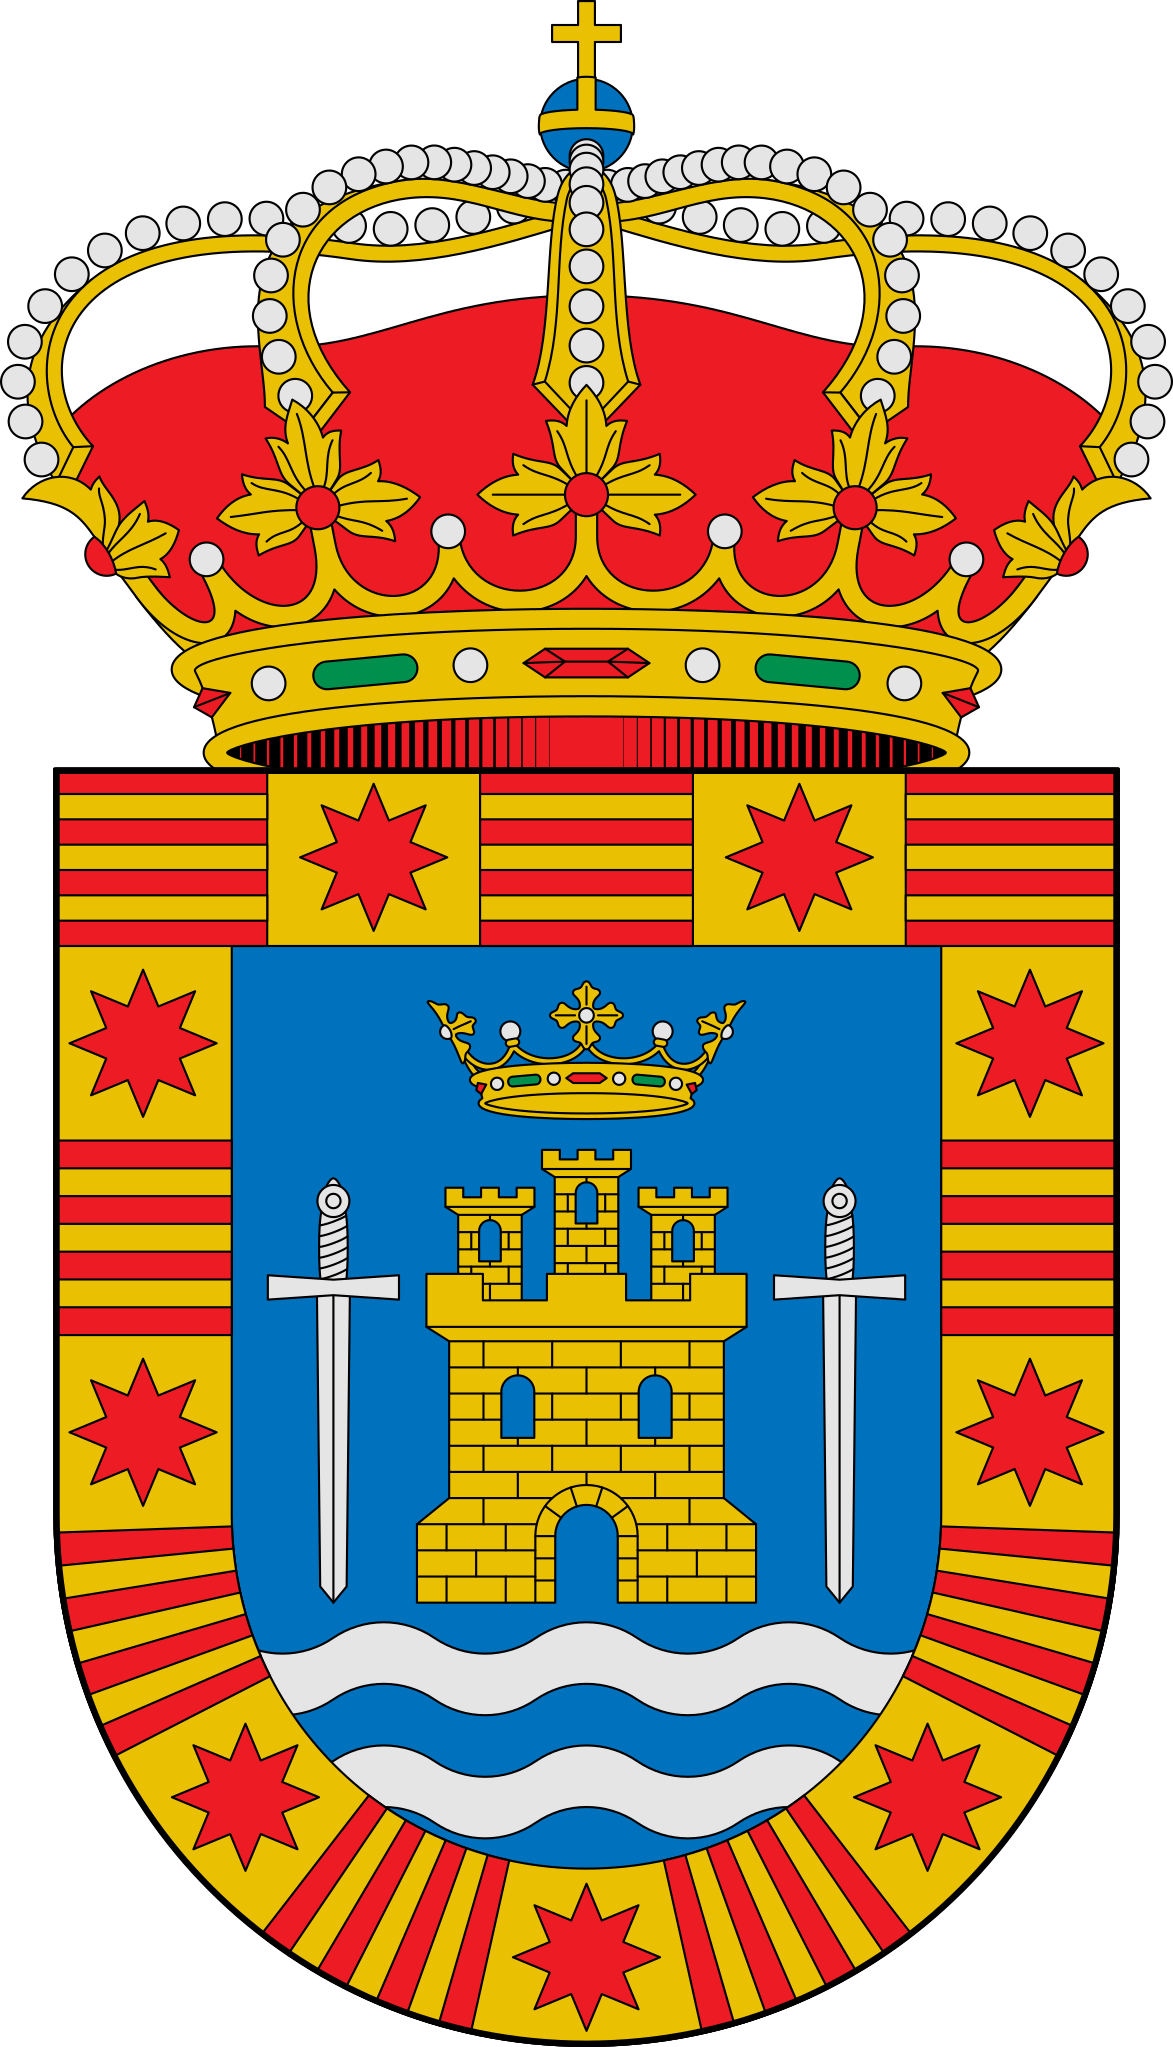 Escudo_de_Villalbarba_(Valladolid).svg